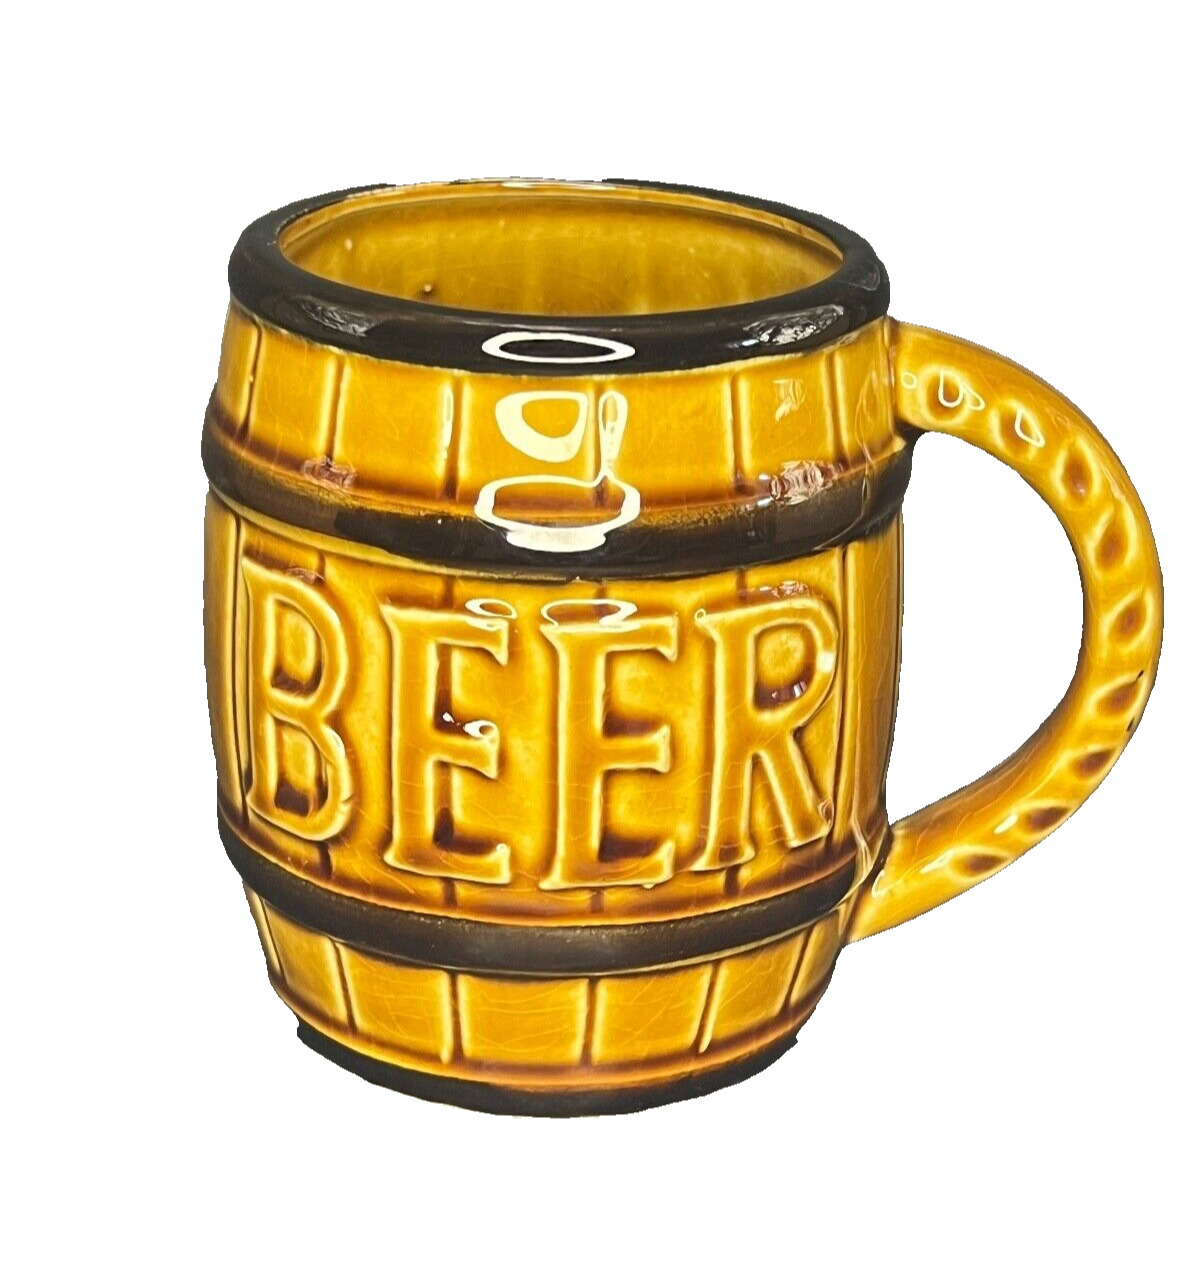 Beer Wooden Barrel Novelty Ceramic Mug